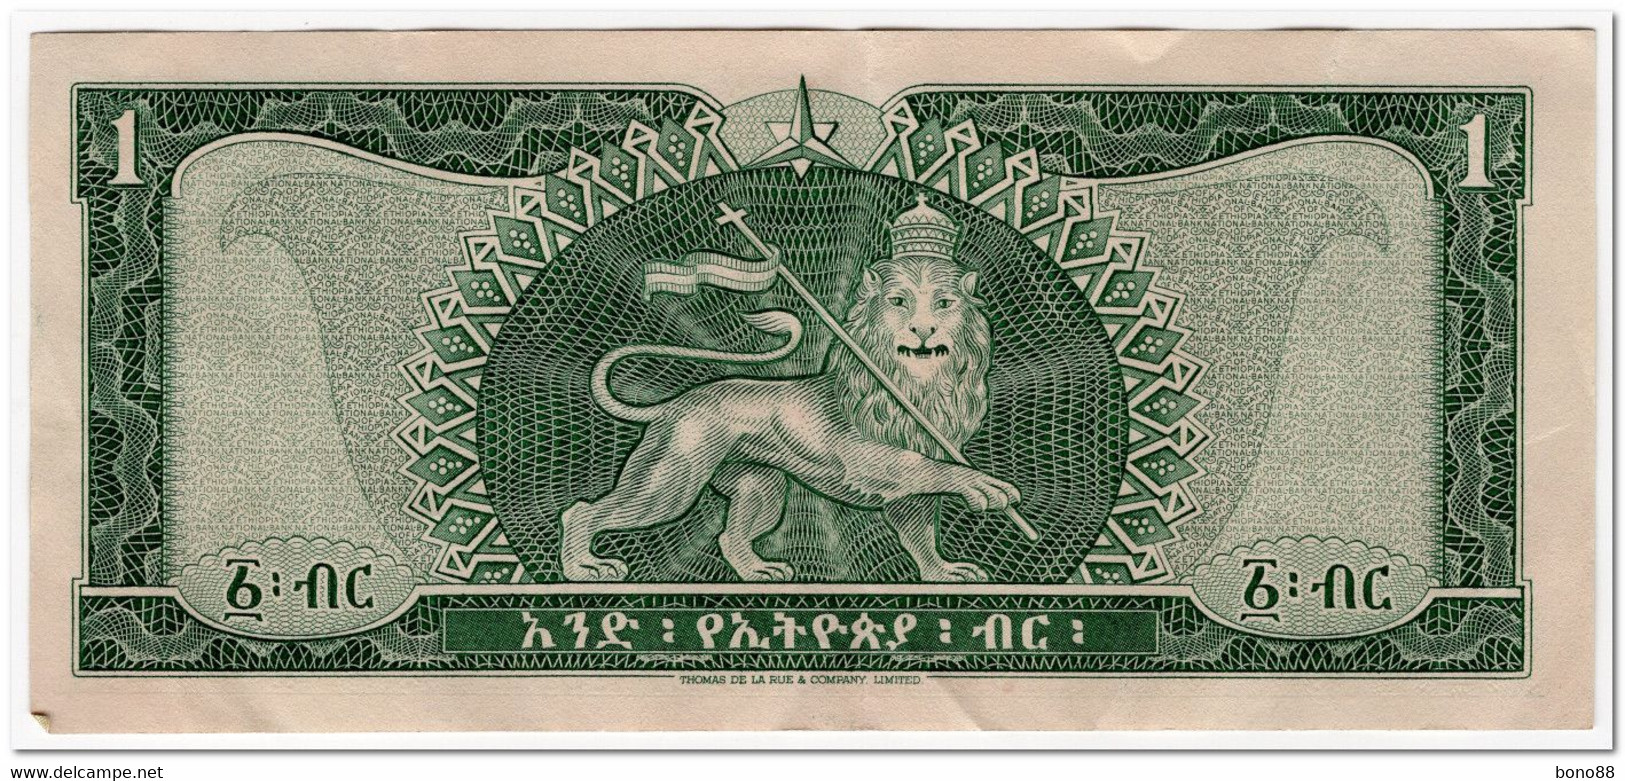 ETHIOPIA,1 DOLLAR,1966,P.25,CLEAN VF+ - Ethiopia